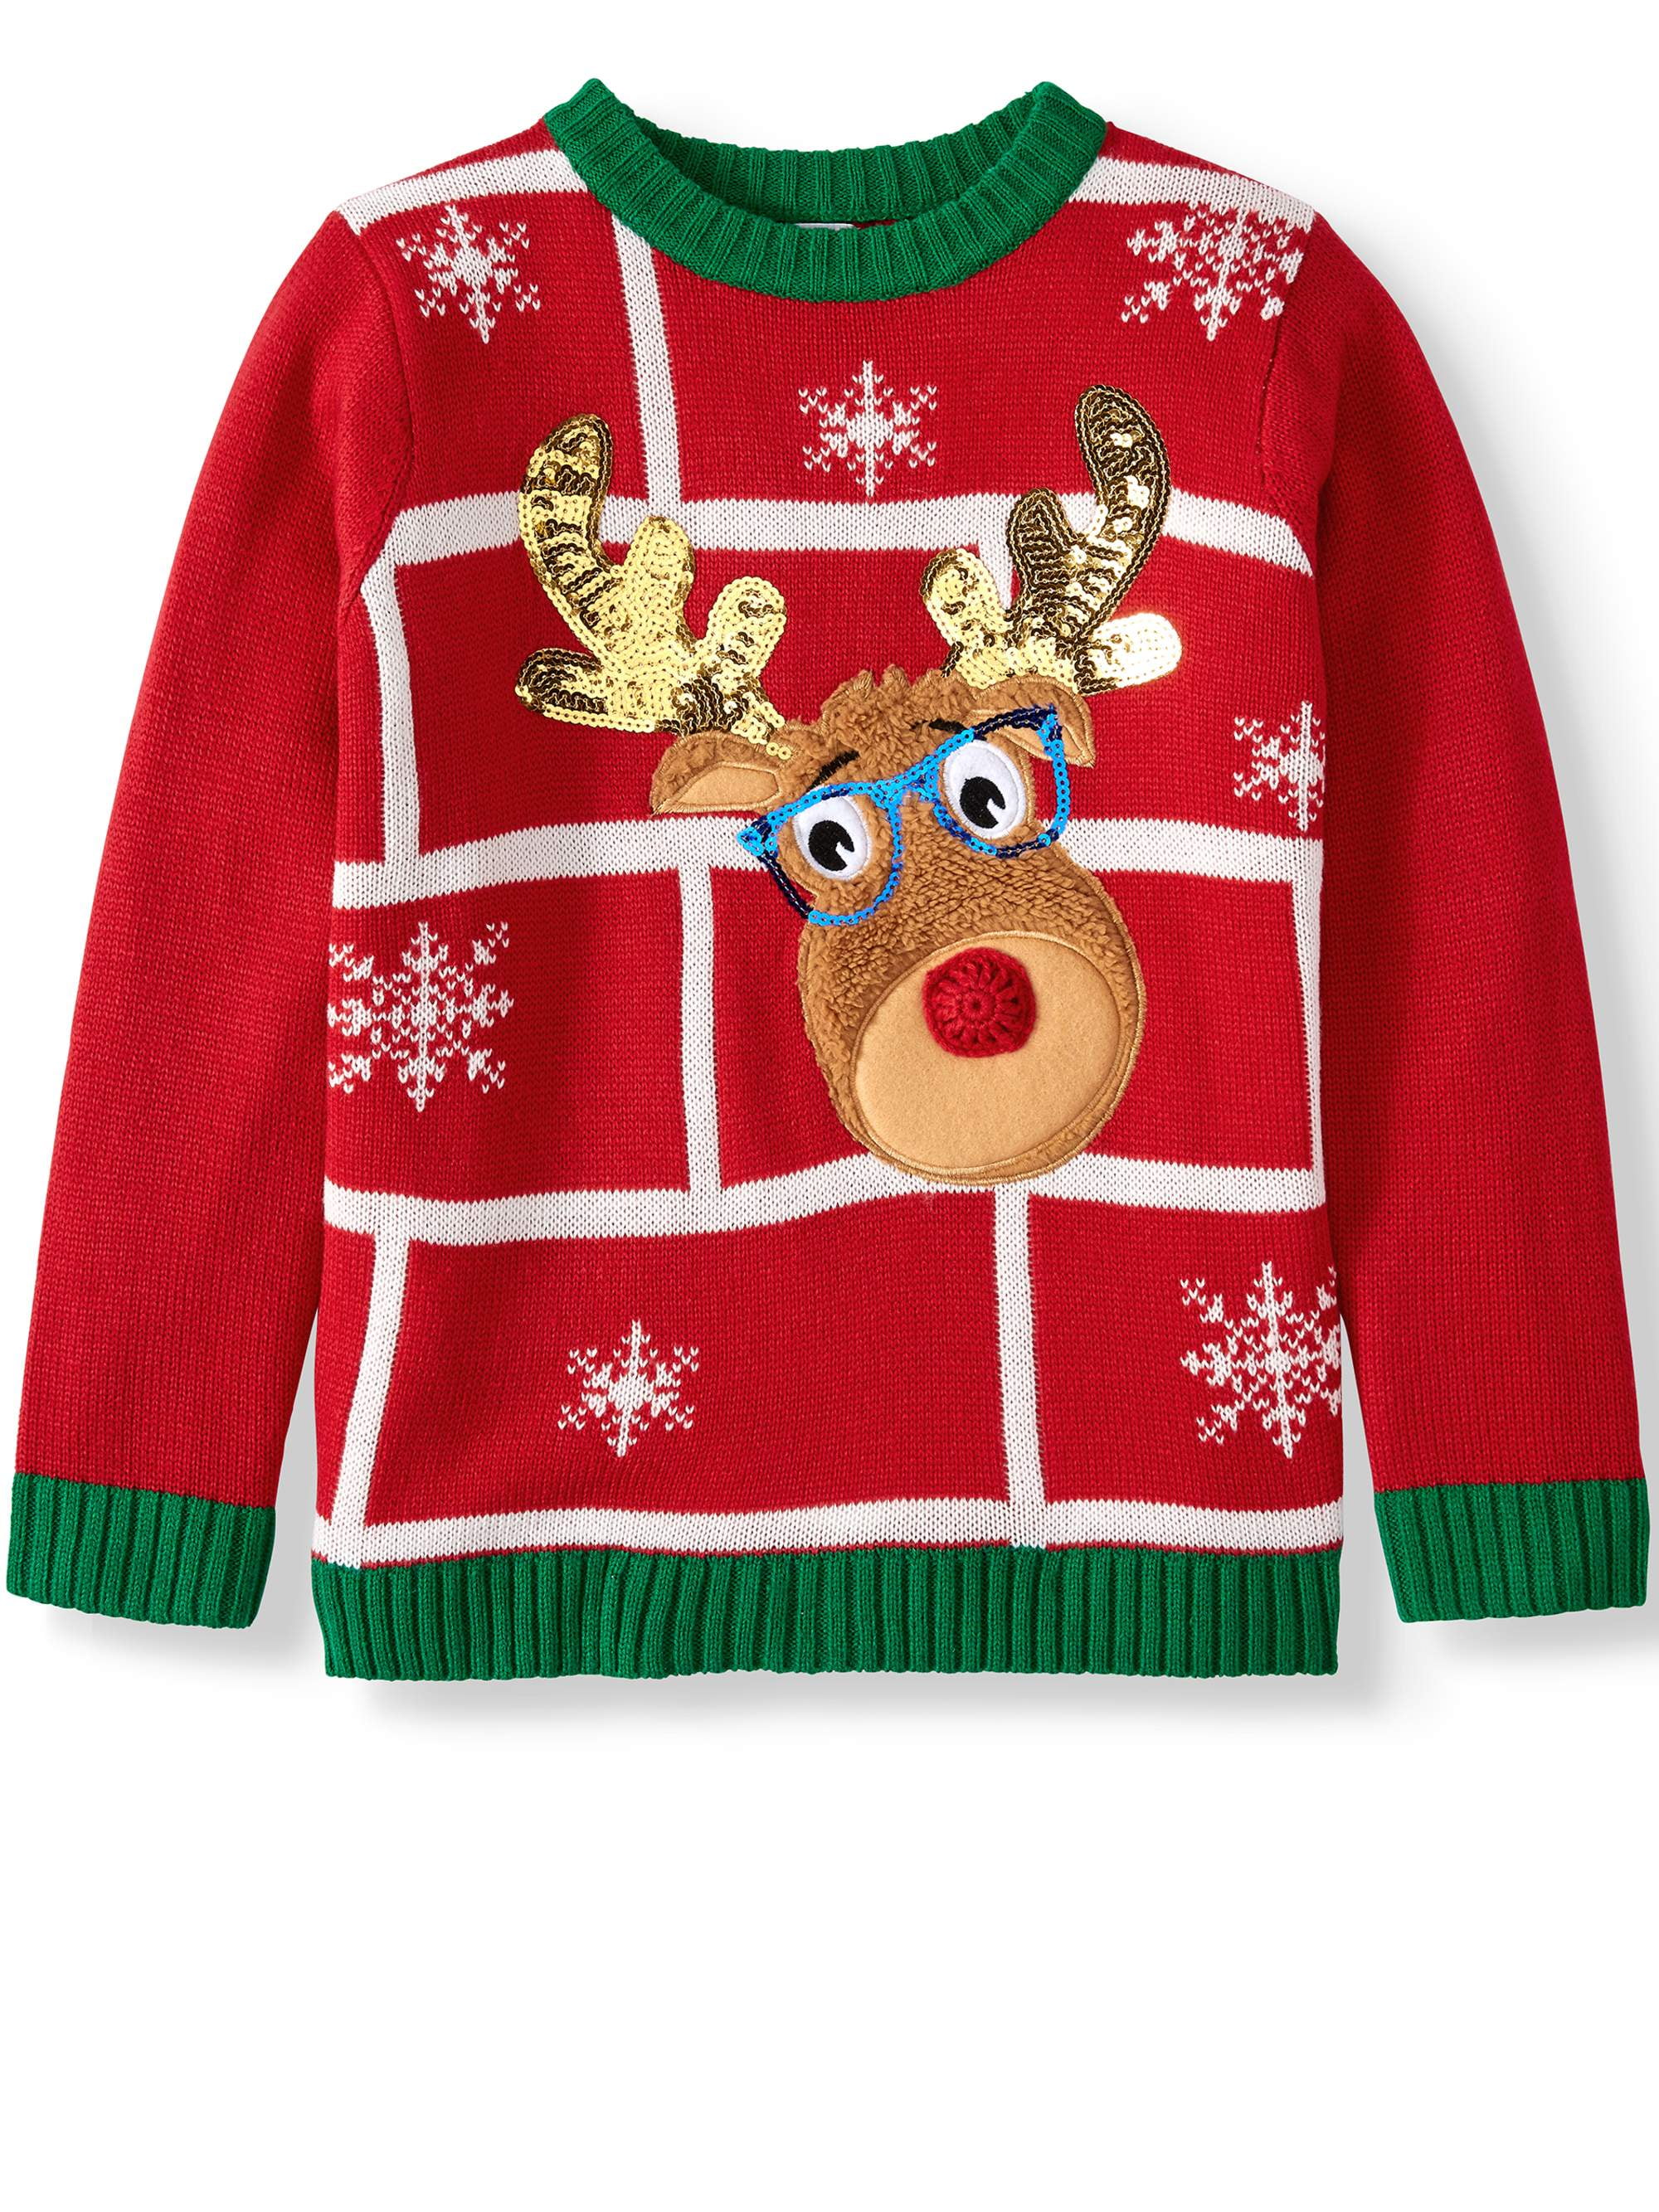 TAIYCYXGAN Toddler Boys Girls Christmas Sweater Kids Deer Pullover Sweatshirt 